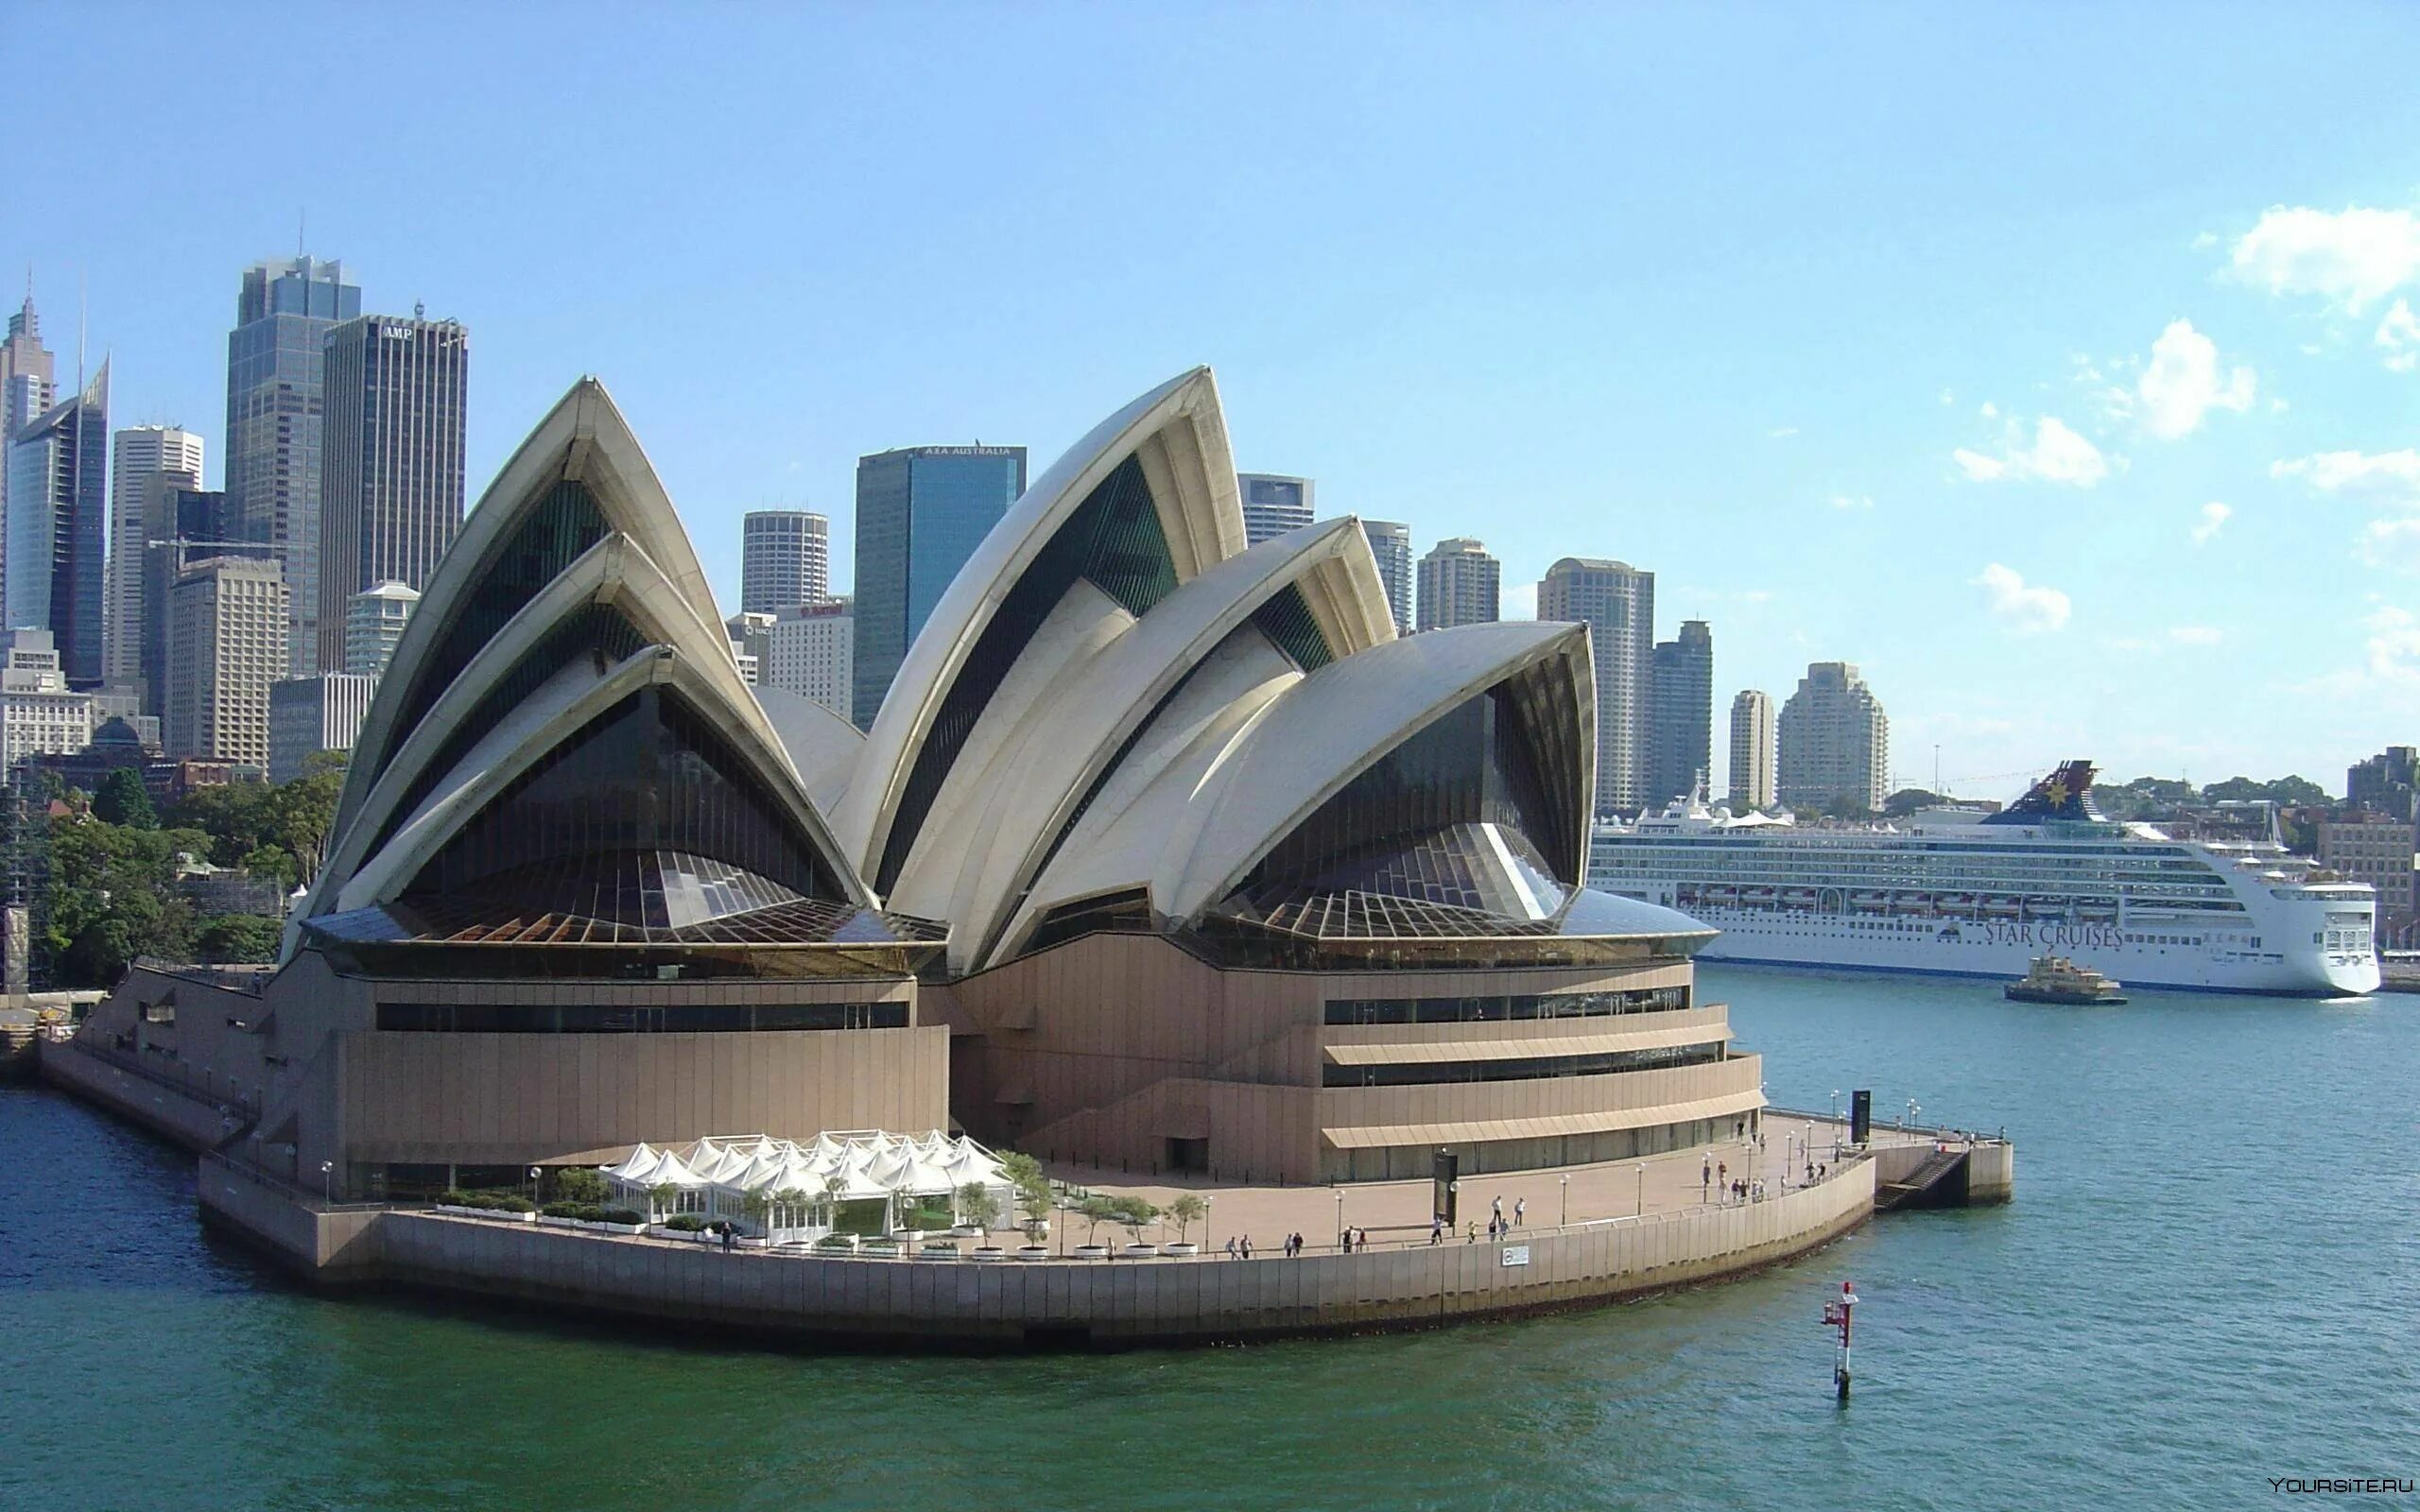 Достопримечательность какой страны является. Сиднейский оперный театр Австралия. Сиднейский оперный театр- г.Сидней (Австралия). Оперный театр в Австралии. Опера Хаус Сидней Австралия.